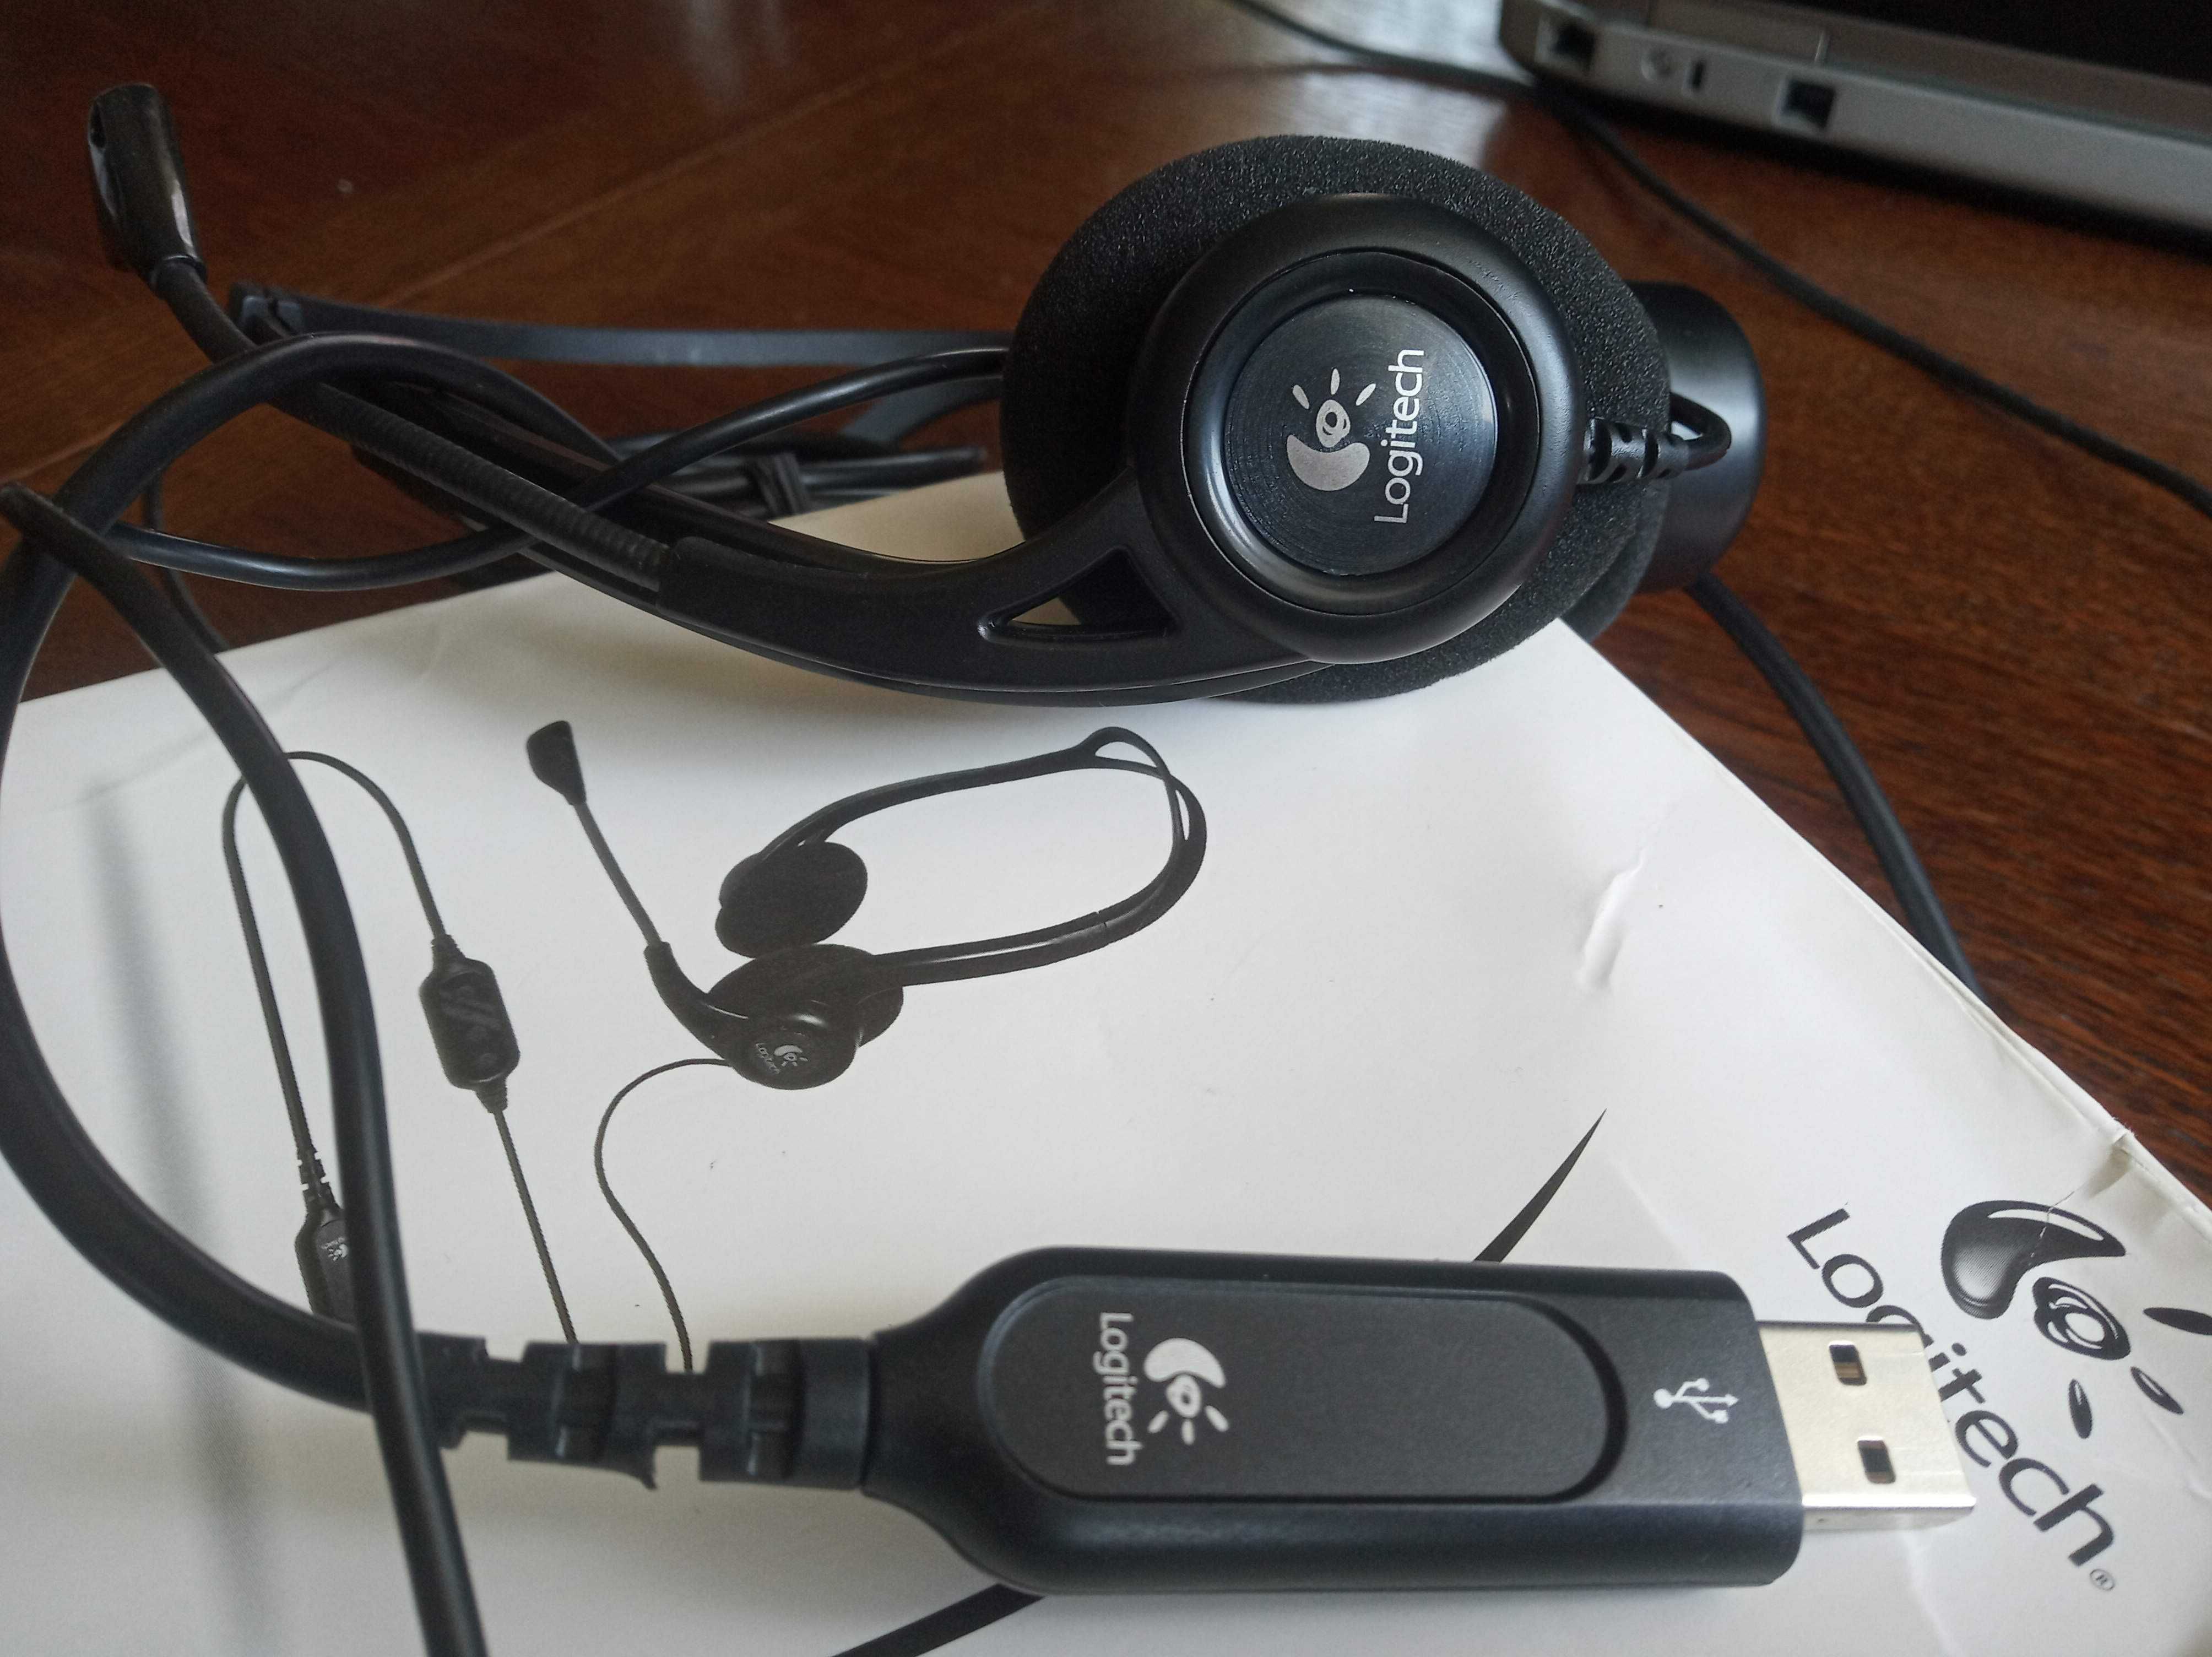 Logitech PC 960 słuchawki przewodowe z mikrofonem OKAZJA